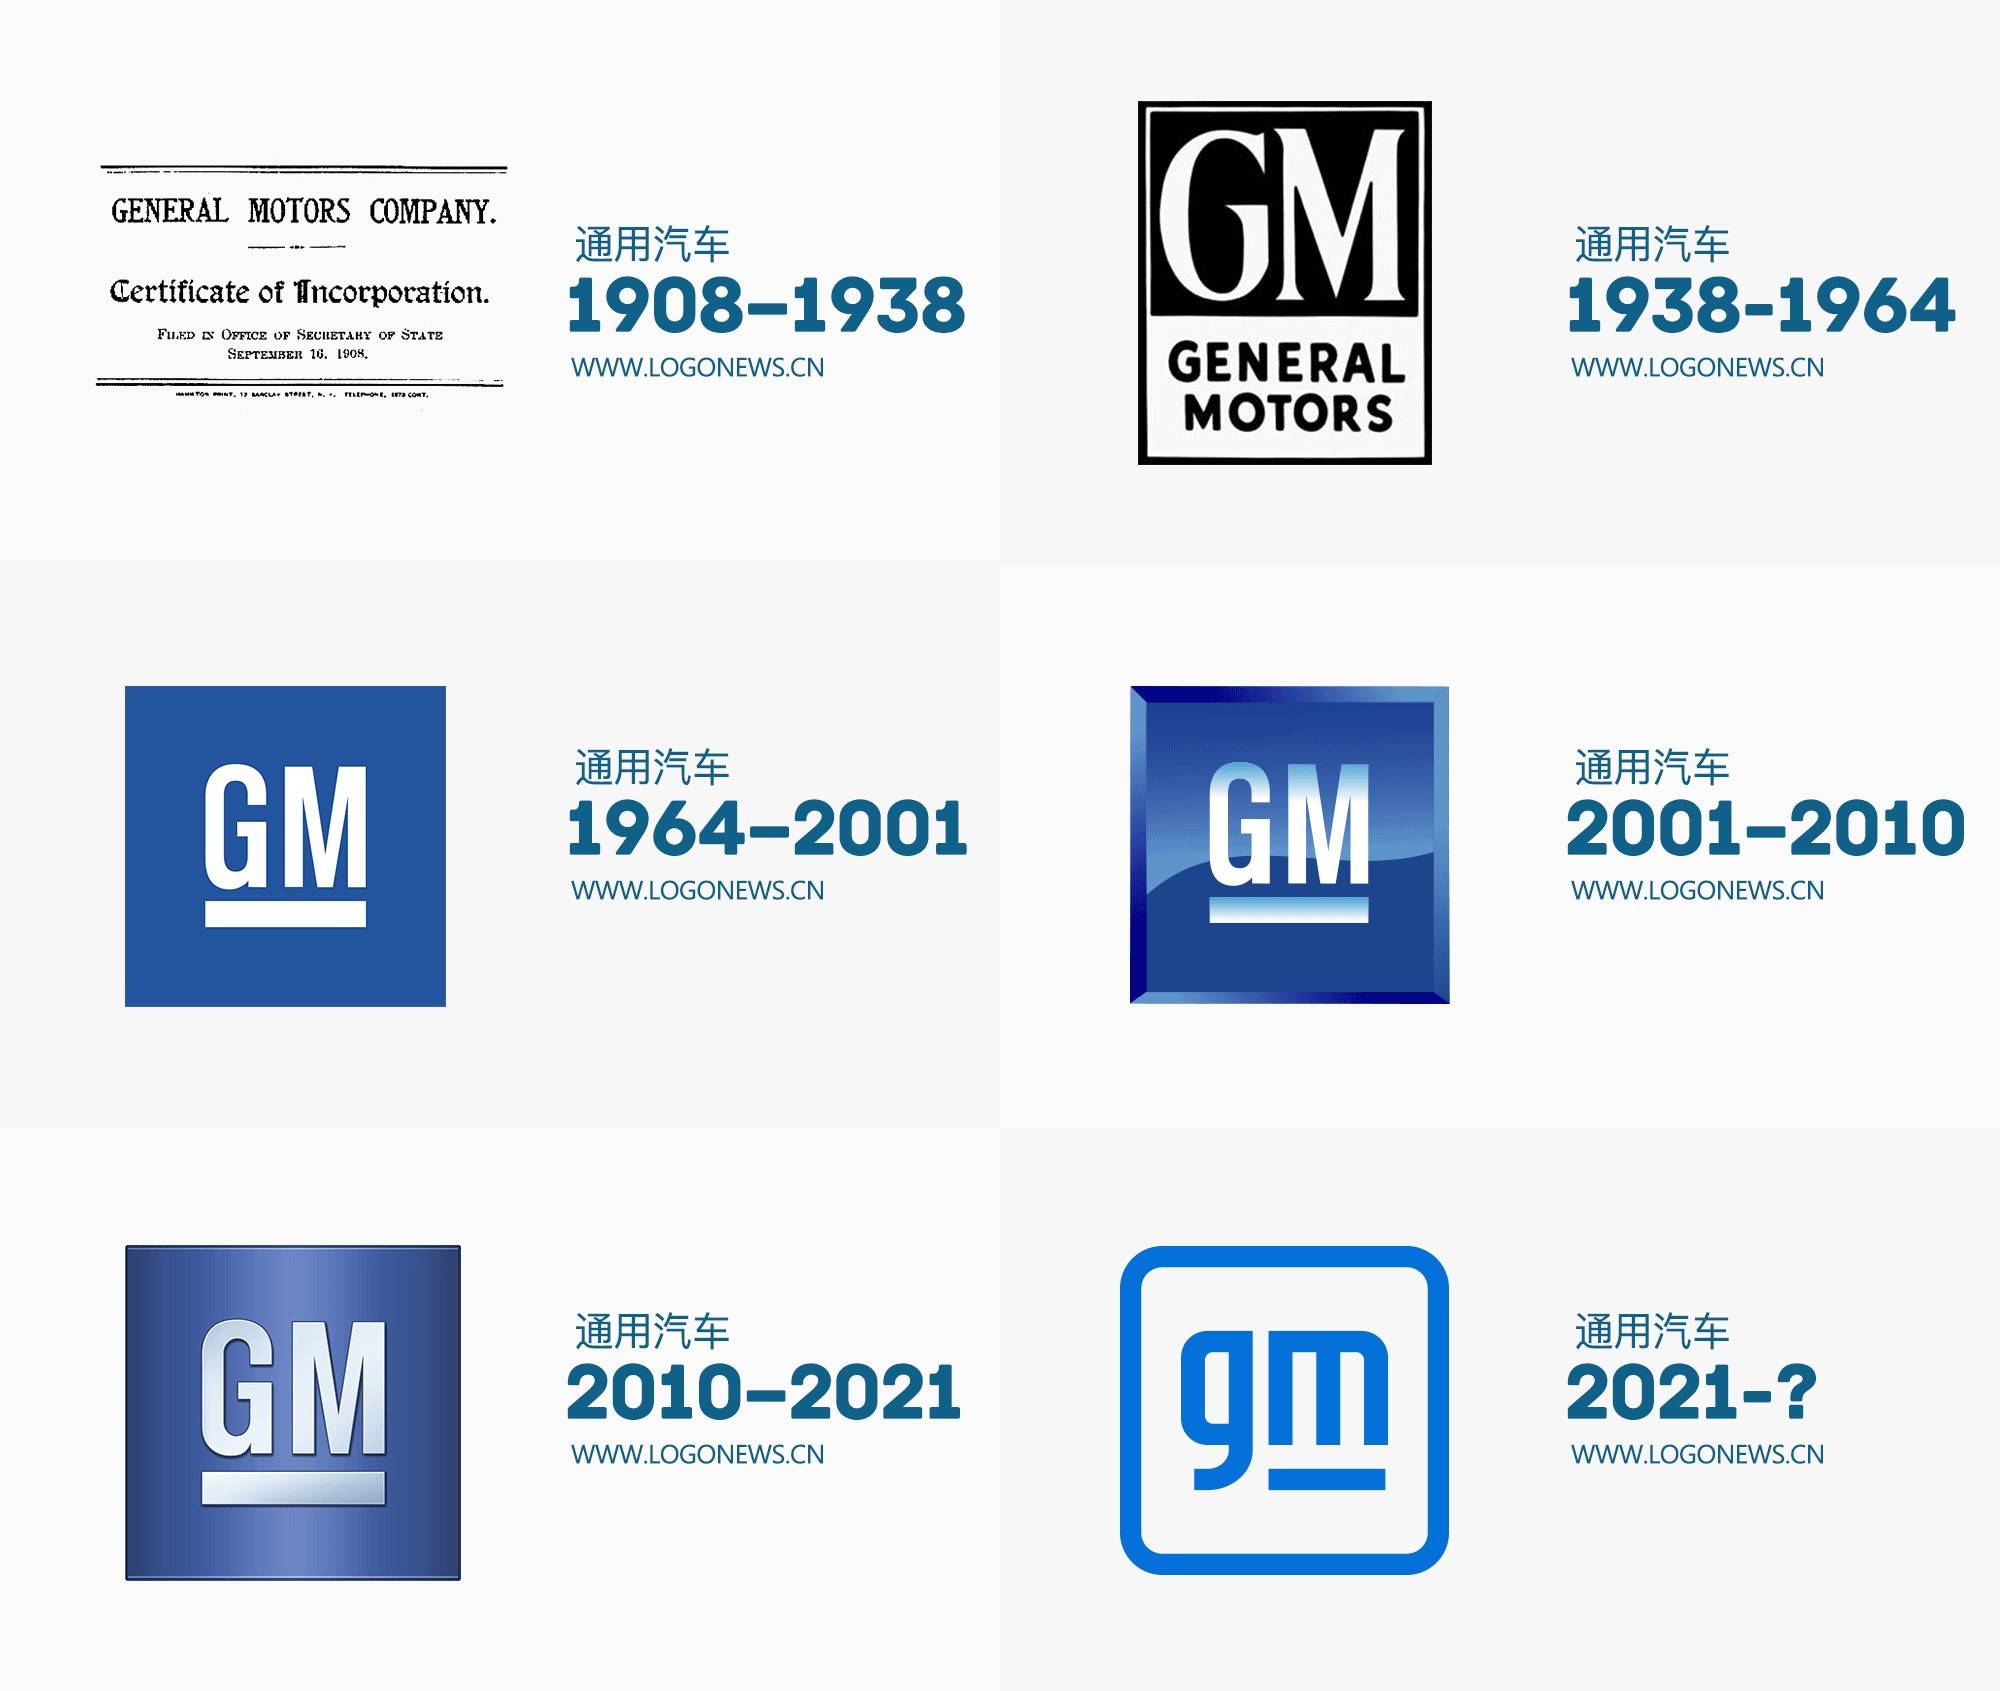 通用汽车发布全新的企业品牌logo,以反映通用汽车公司的进取愿景,标志